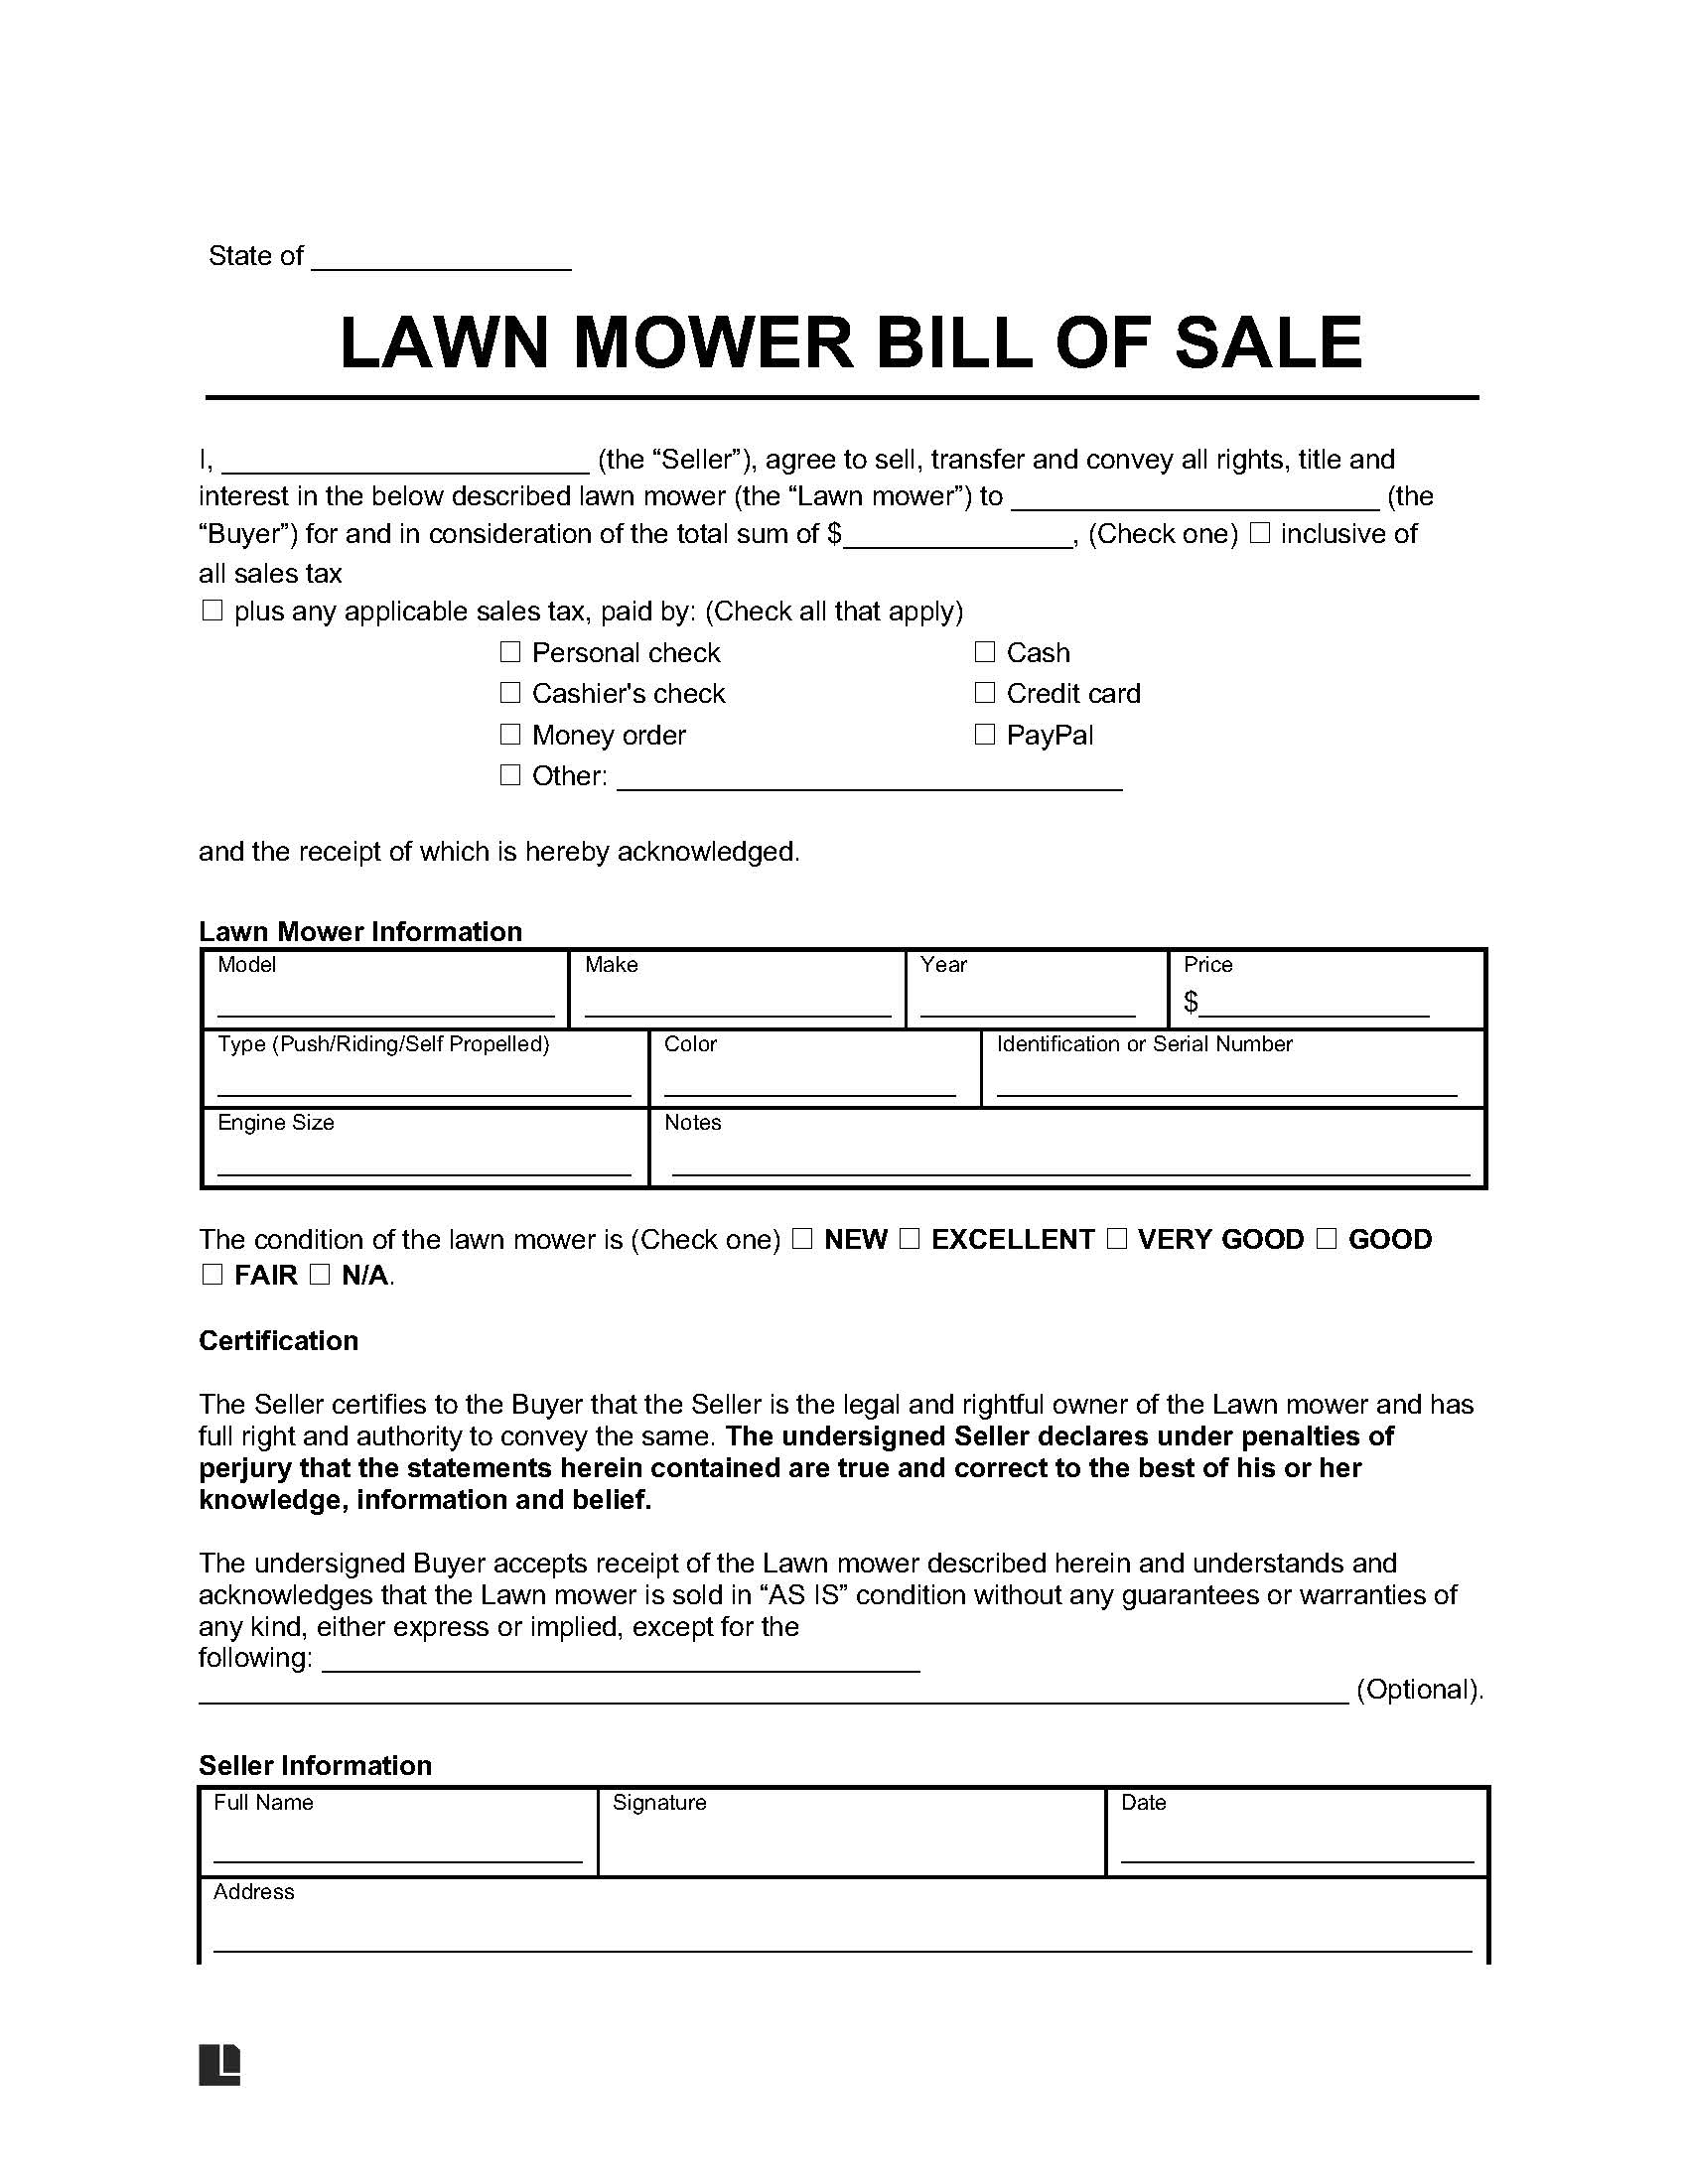 lawnmower bill of sale form